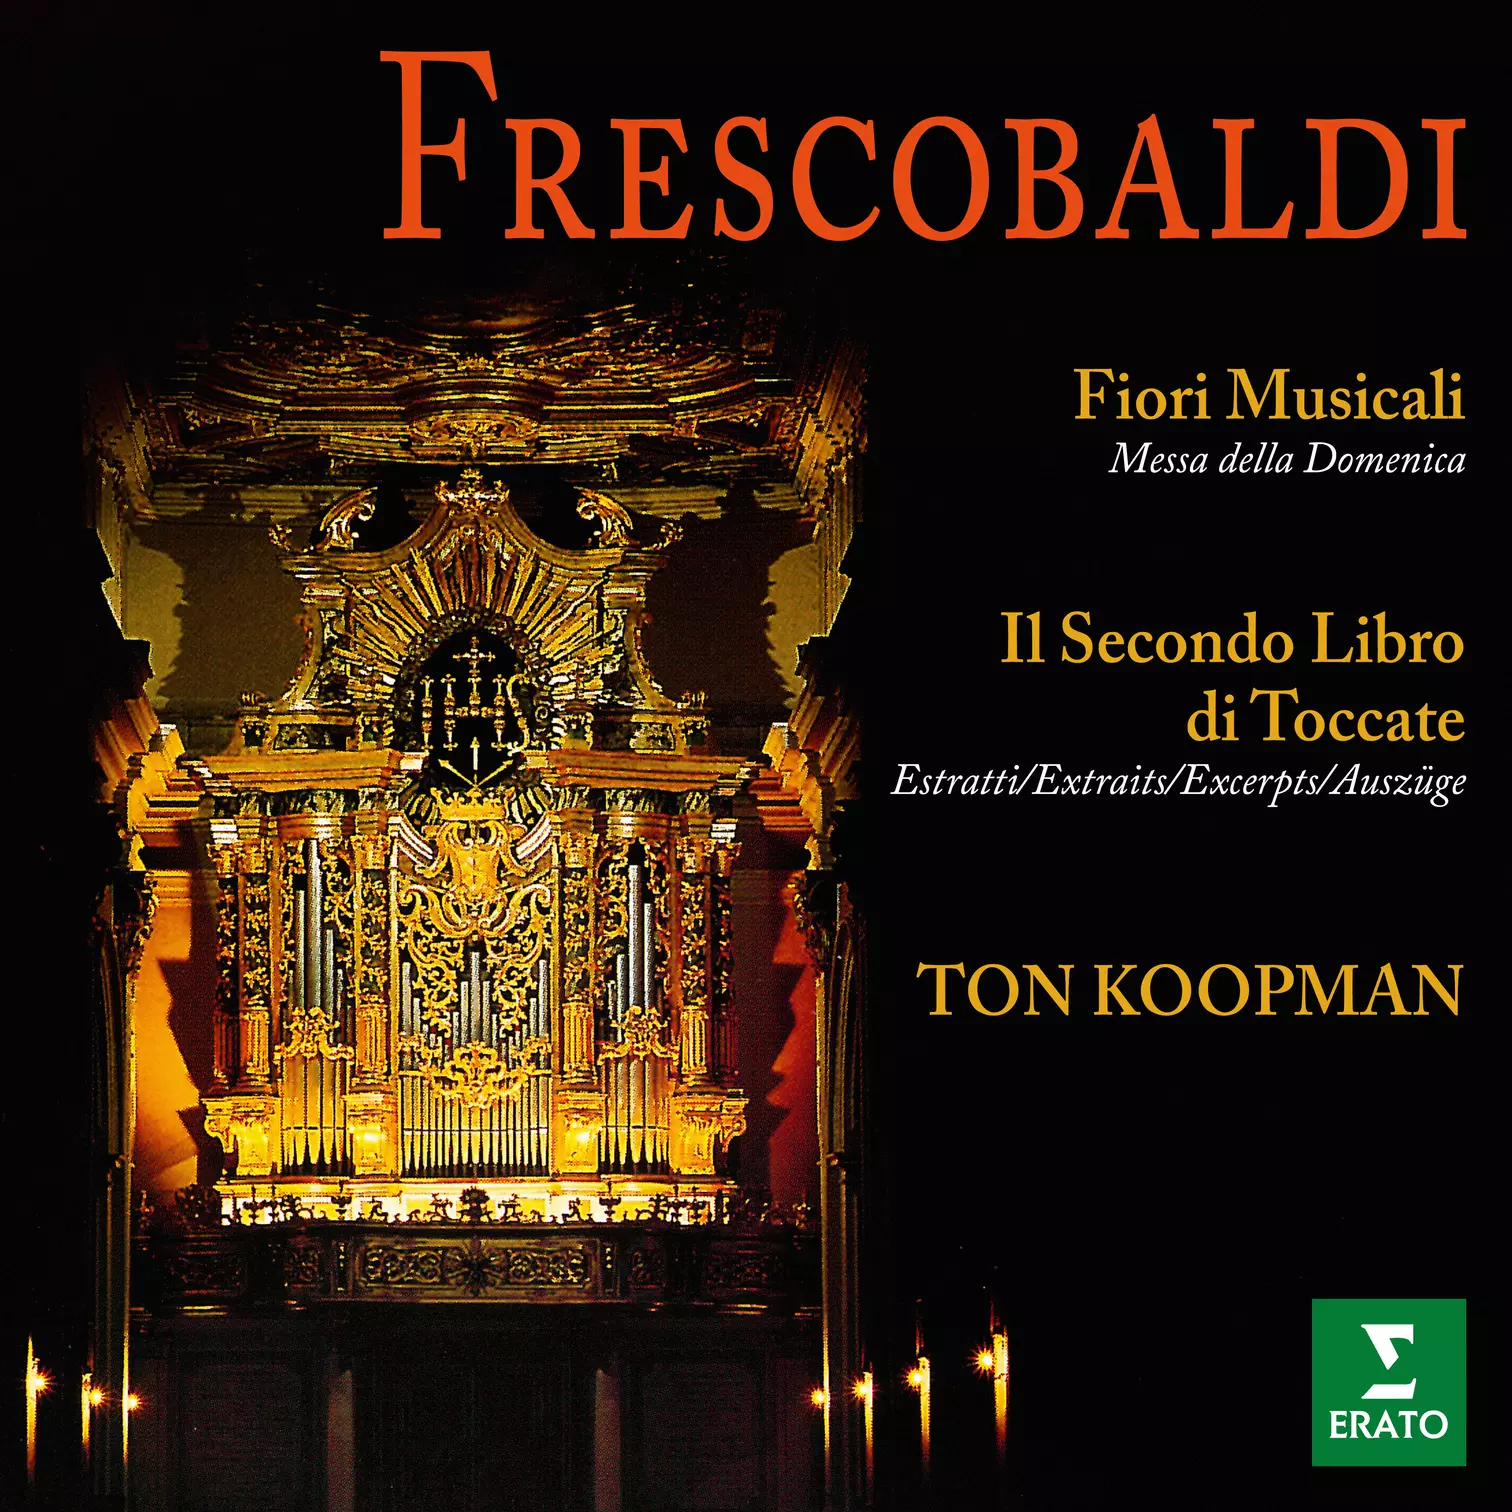 Frescobaldi: Fiori musicali e brani tratti dal Secondo Libro di Toccate